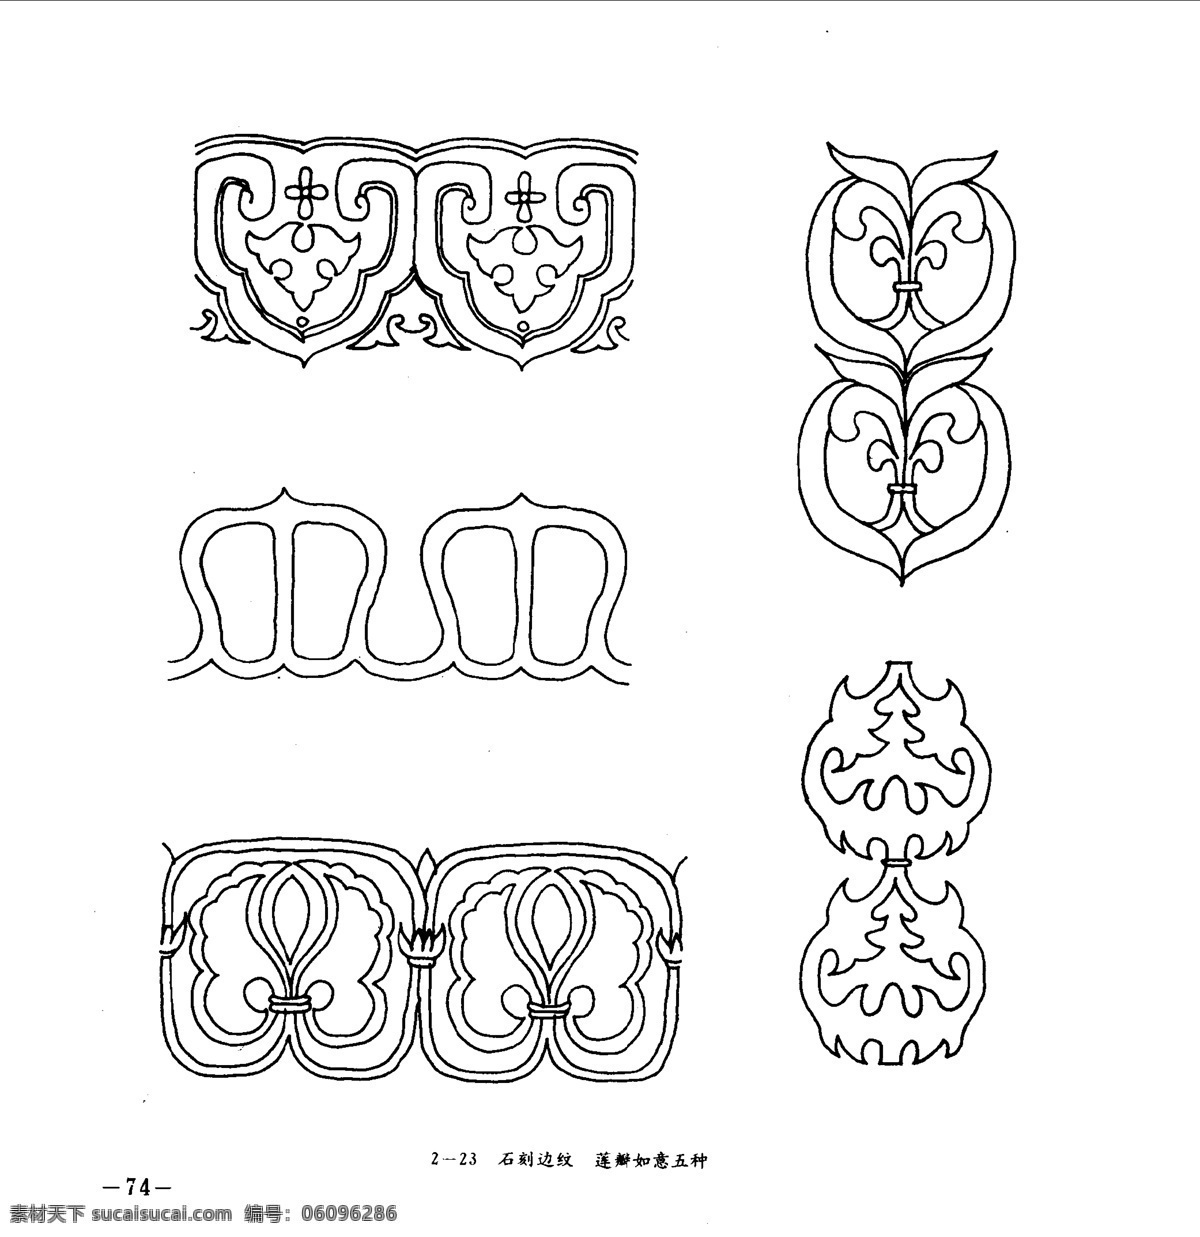 中国 古典 建筑装饰 图案 选 副本 设计素材 古建图案 其他资料 白色